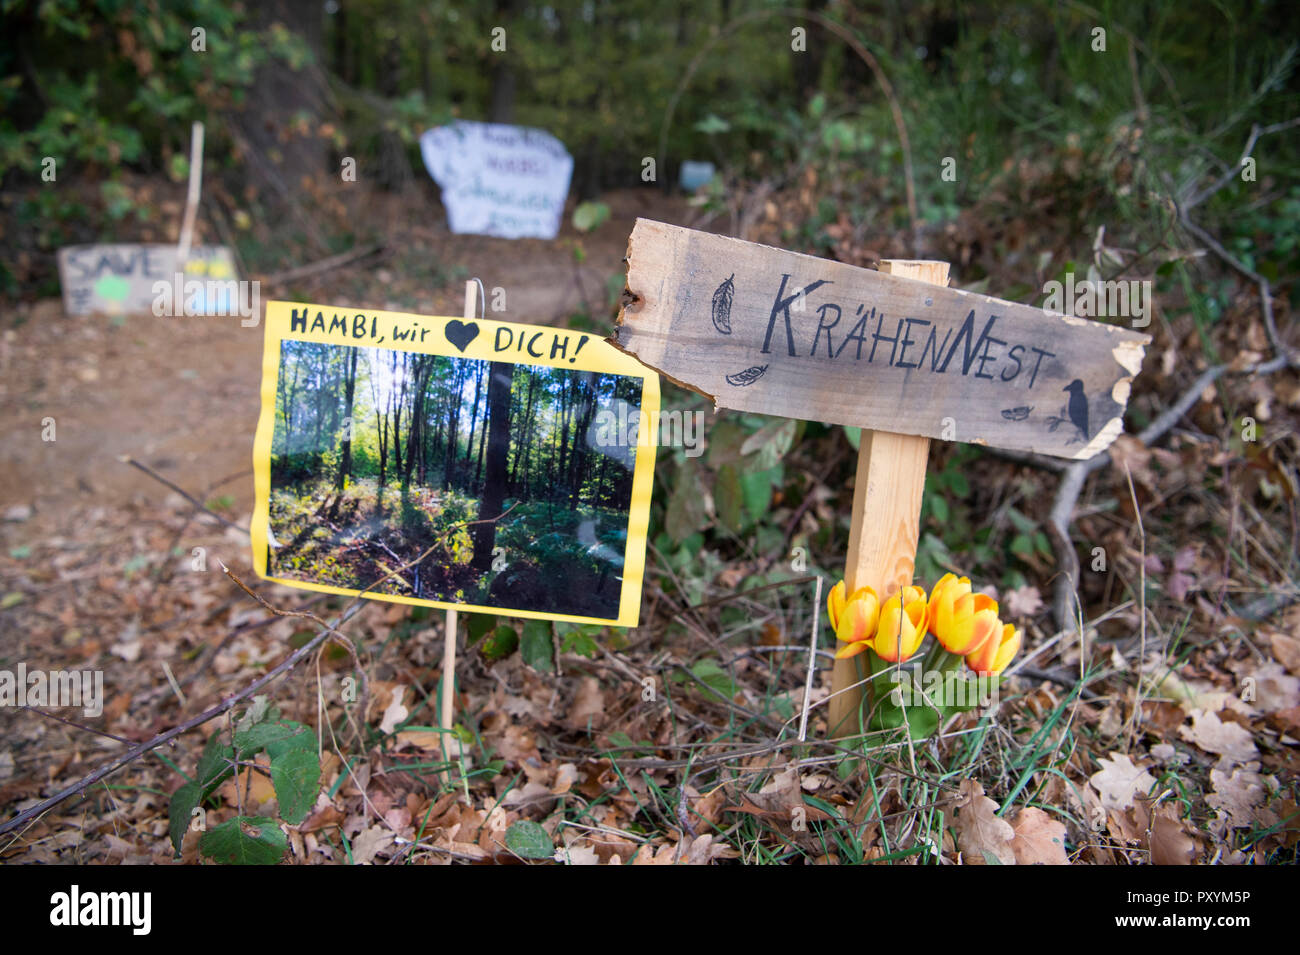 Kerpen, Germania. 24 ott 2018. 24 ottobre 2018, Germania, Kerpen: nella foresta di Hambach vi sono segni di terra dicendo "Hambi ti amiamo' e 'Crow's Nest". Credito: Christophe Gateau/dpa/Alamy Live News Foto Stock